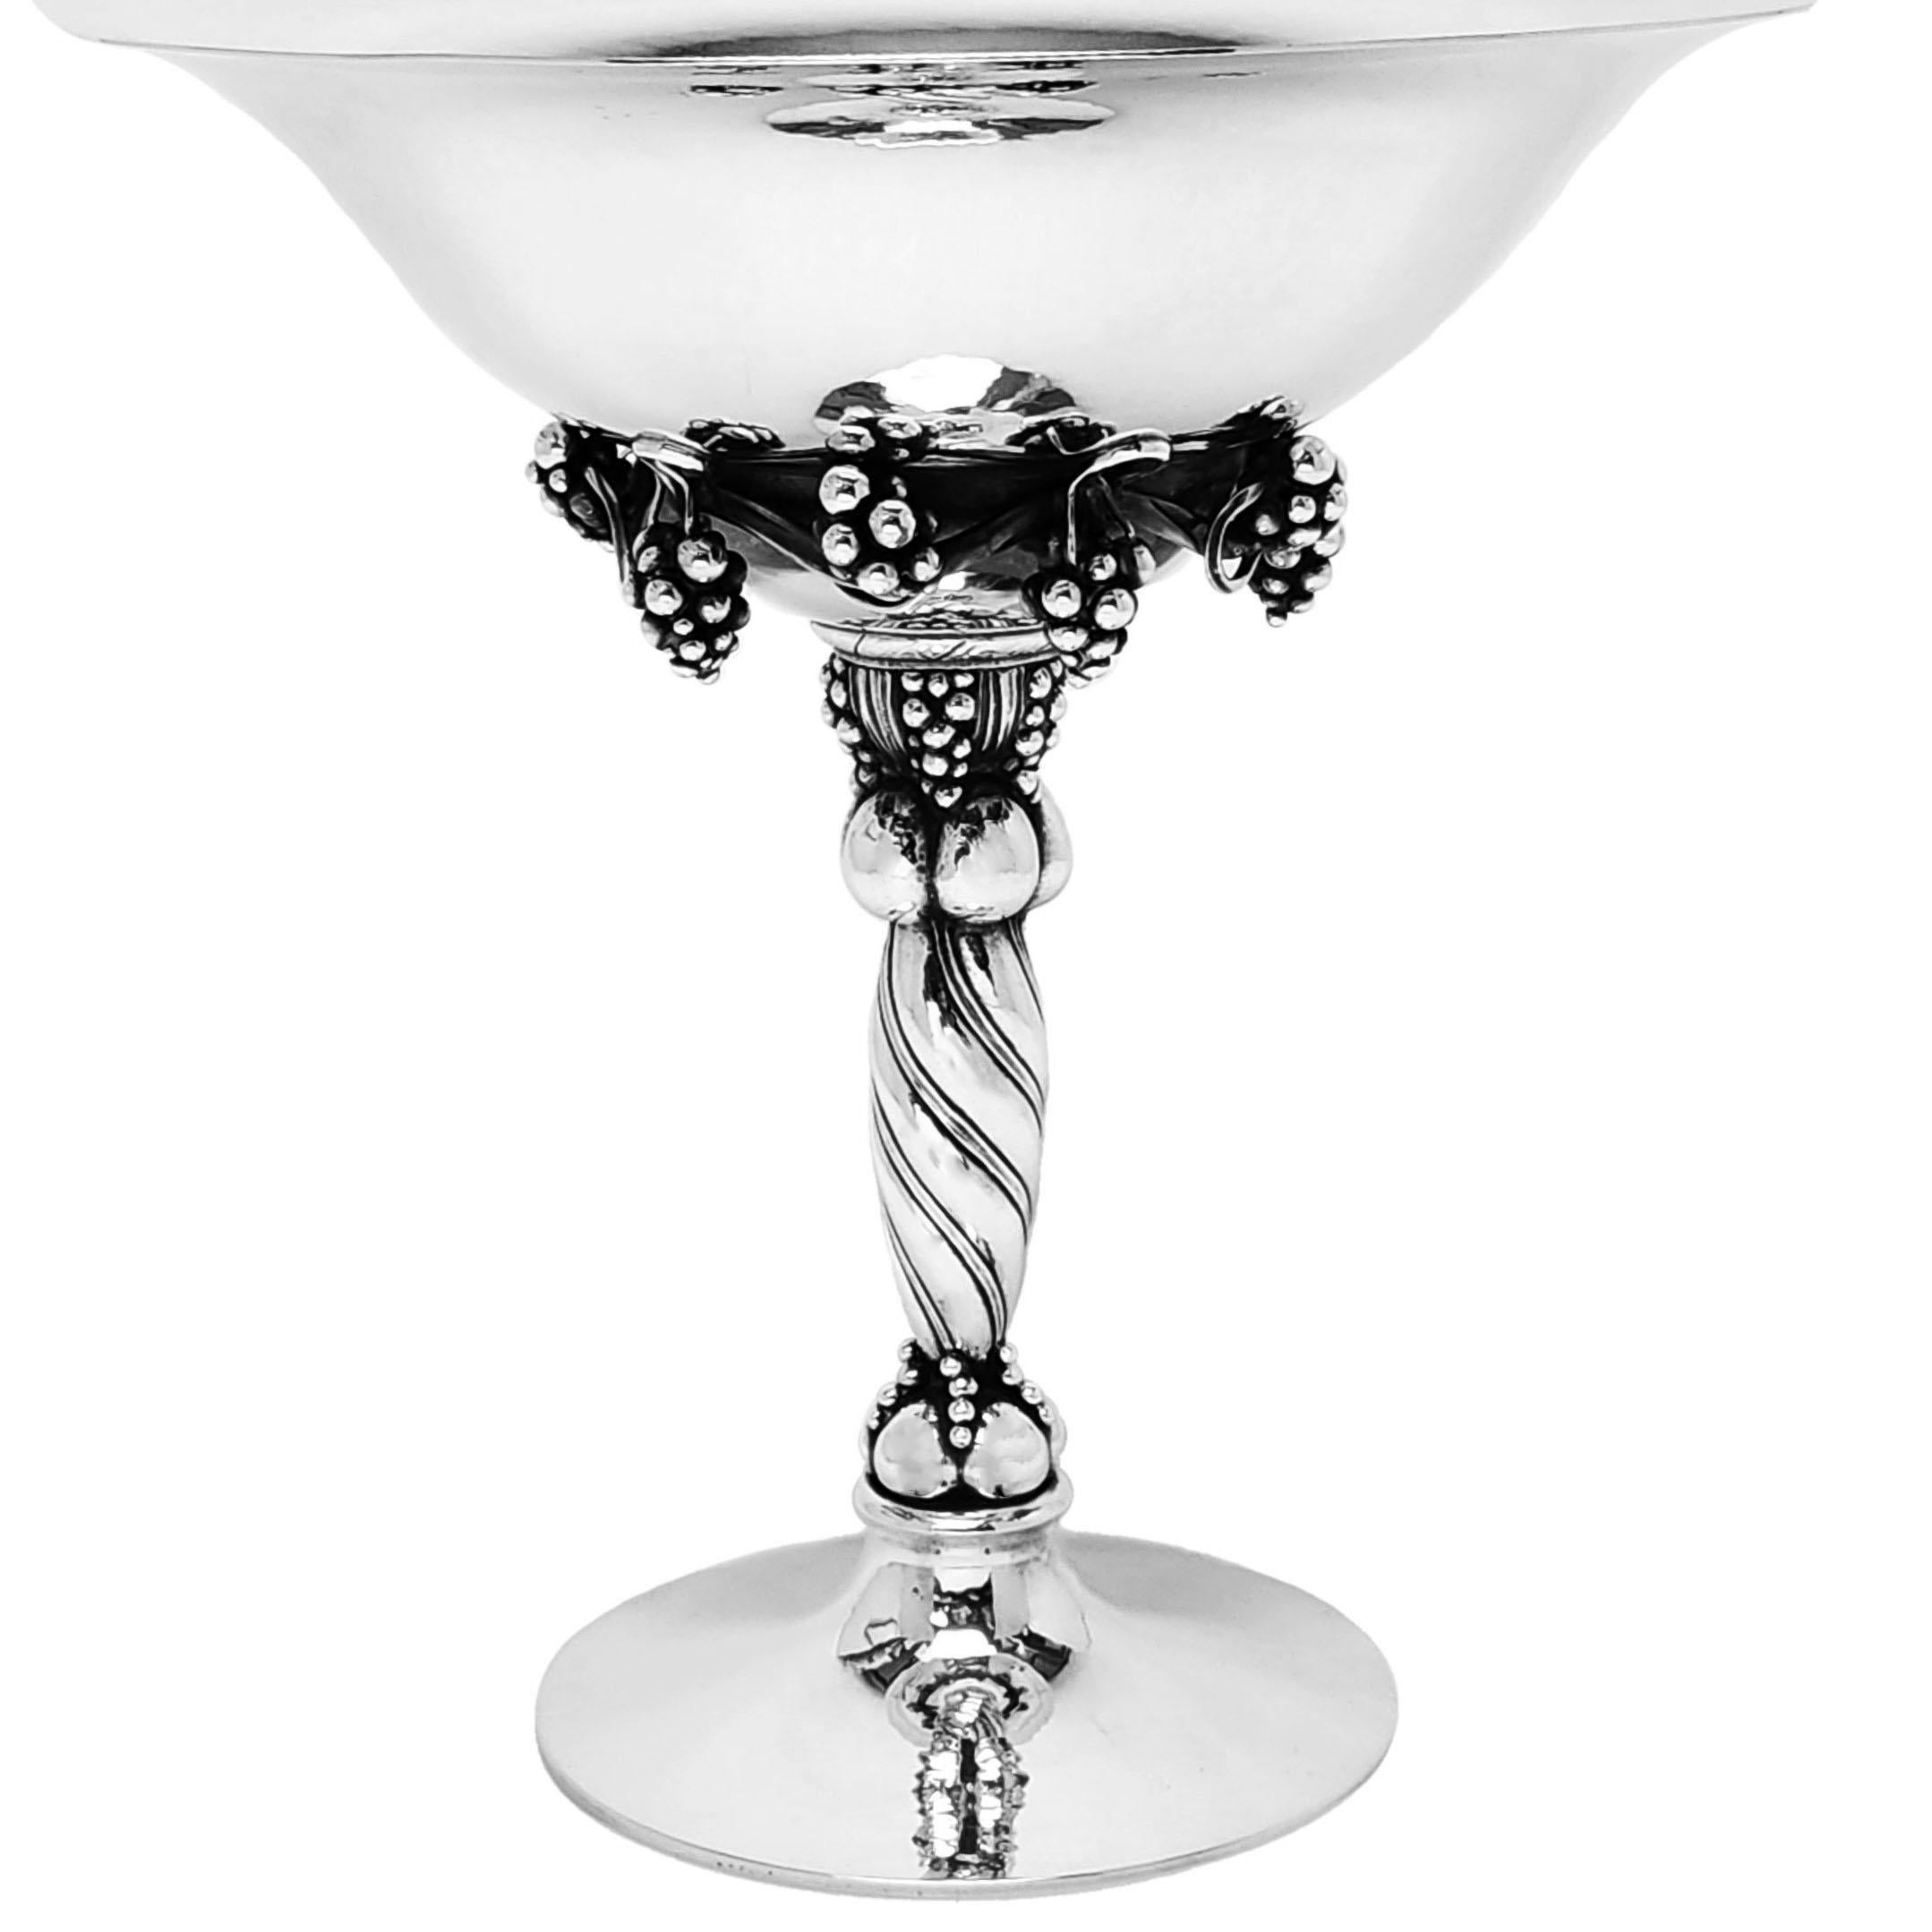 Ein prächtiges Silberkompott von Georg Jensen mit dem Muster Nr. 264 A, das ein elegantes Traubenmuster unter einer fein gehämmerten Schale zeigt. Die Silberschale steht auf einem gedrehten Stiel mit einem gehämmerten Spreizfuß.
 
Hergestellt in